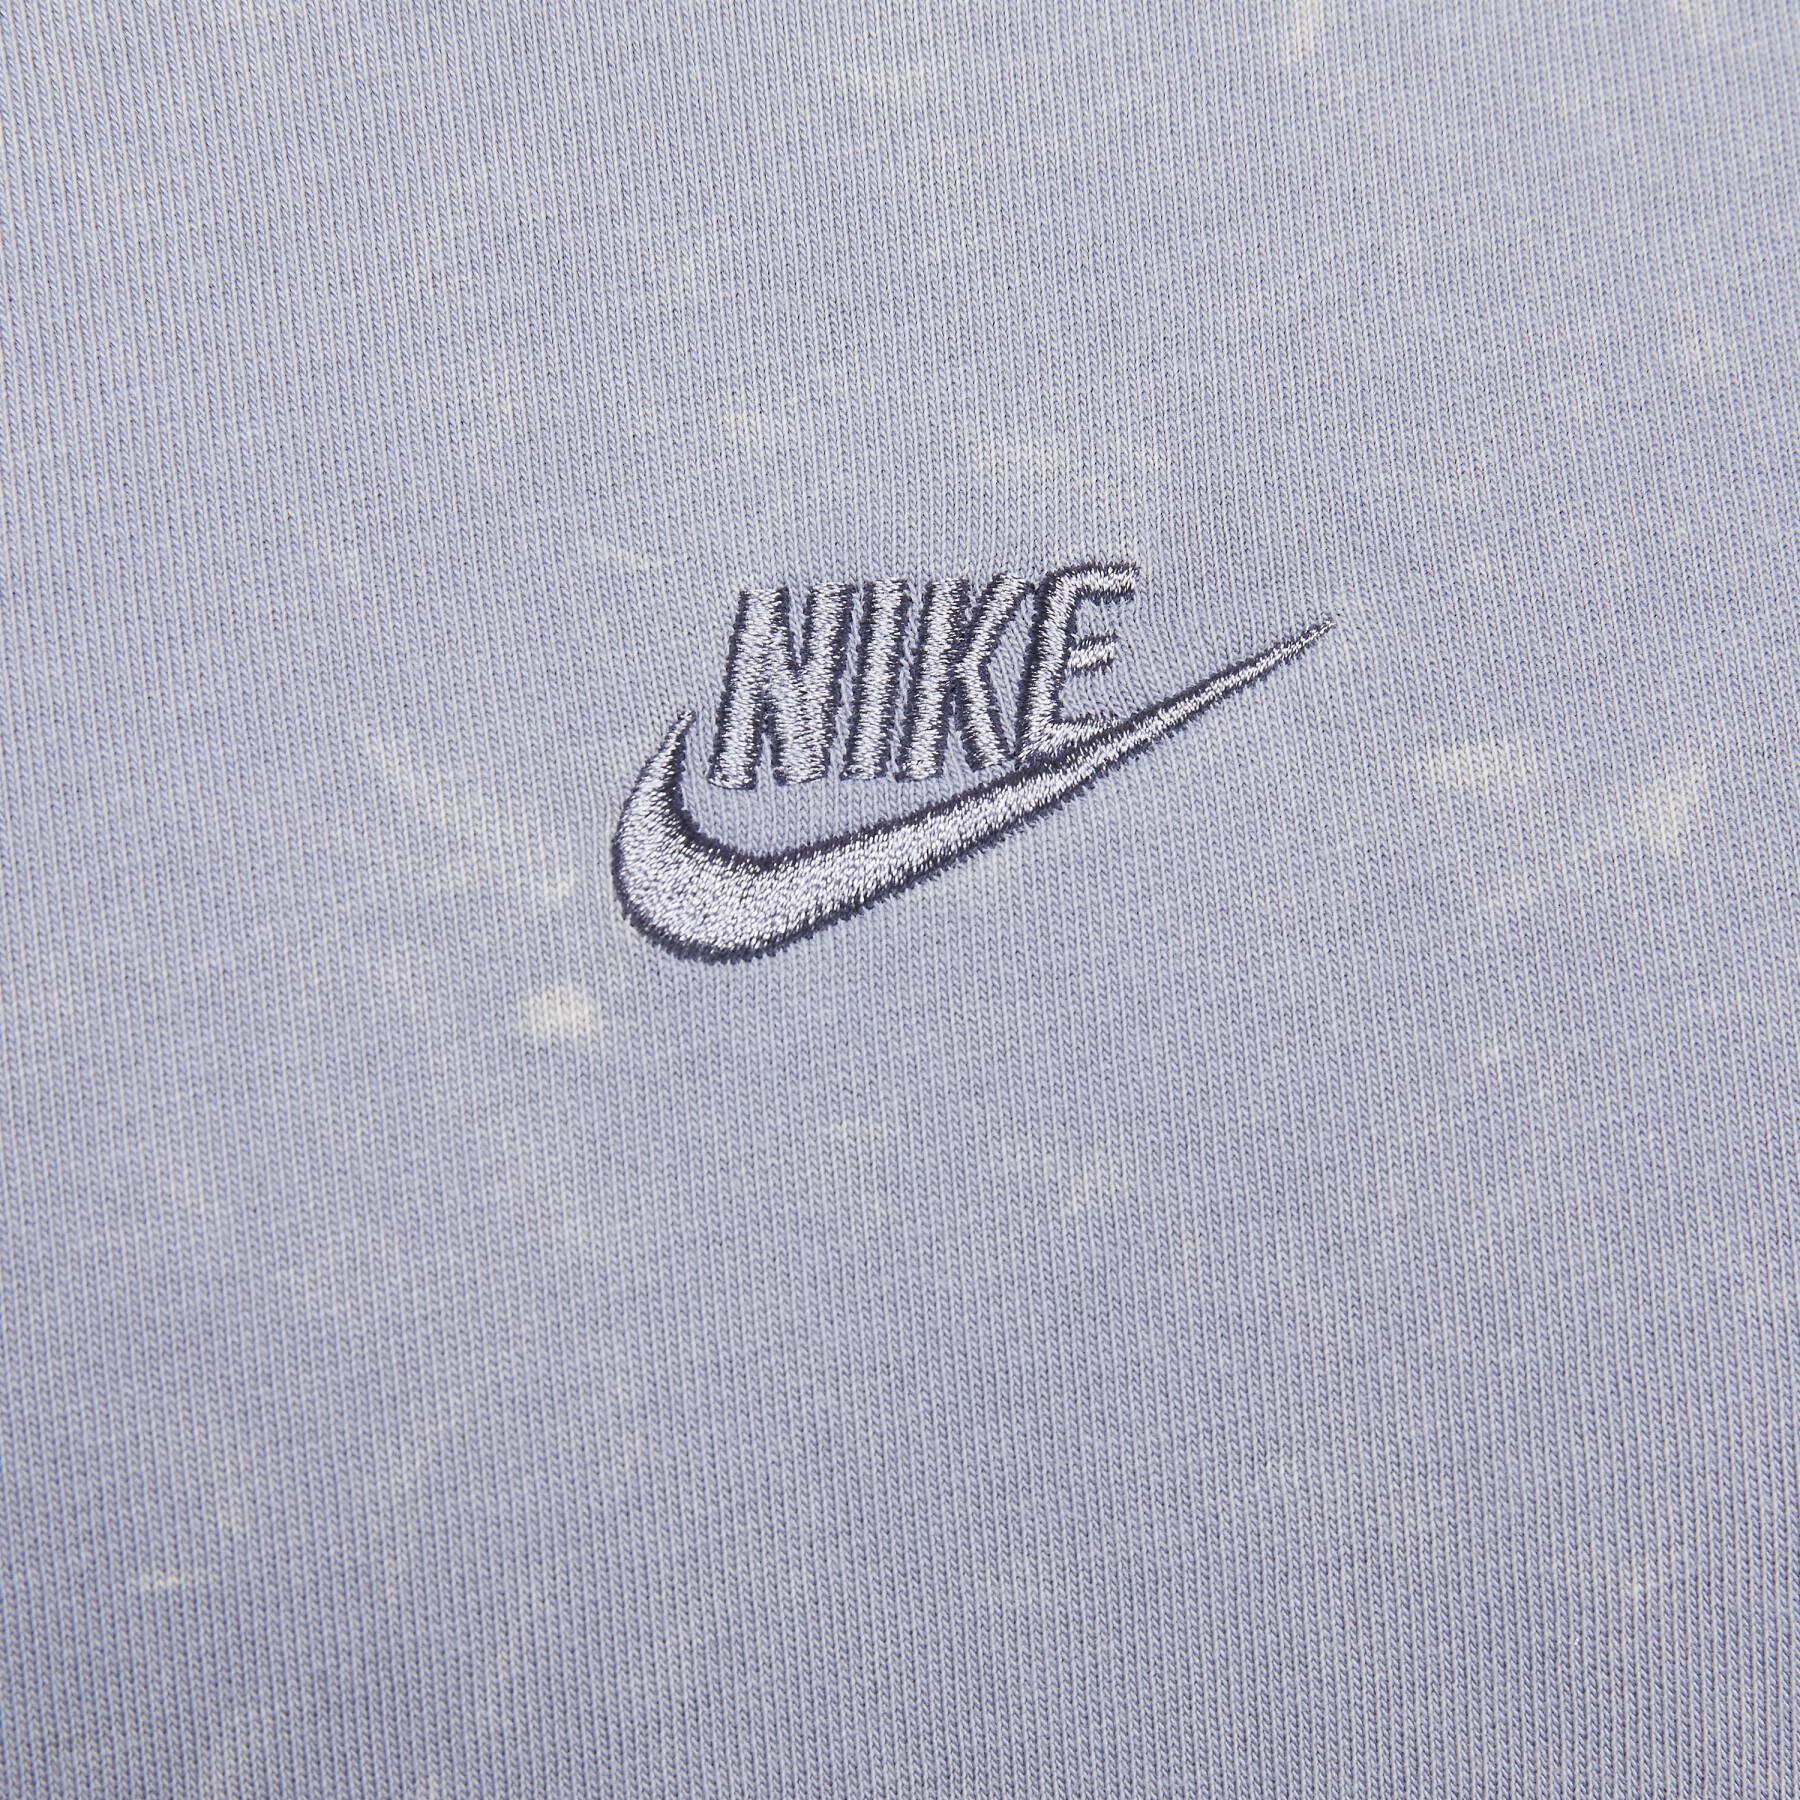 T-Shirt Nike M90 Prem Essential Dye